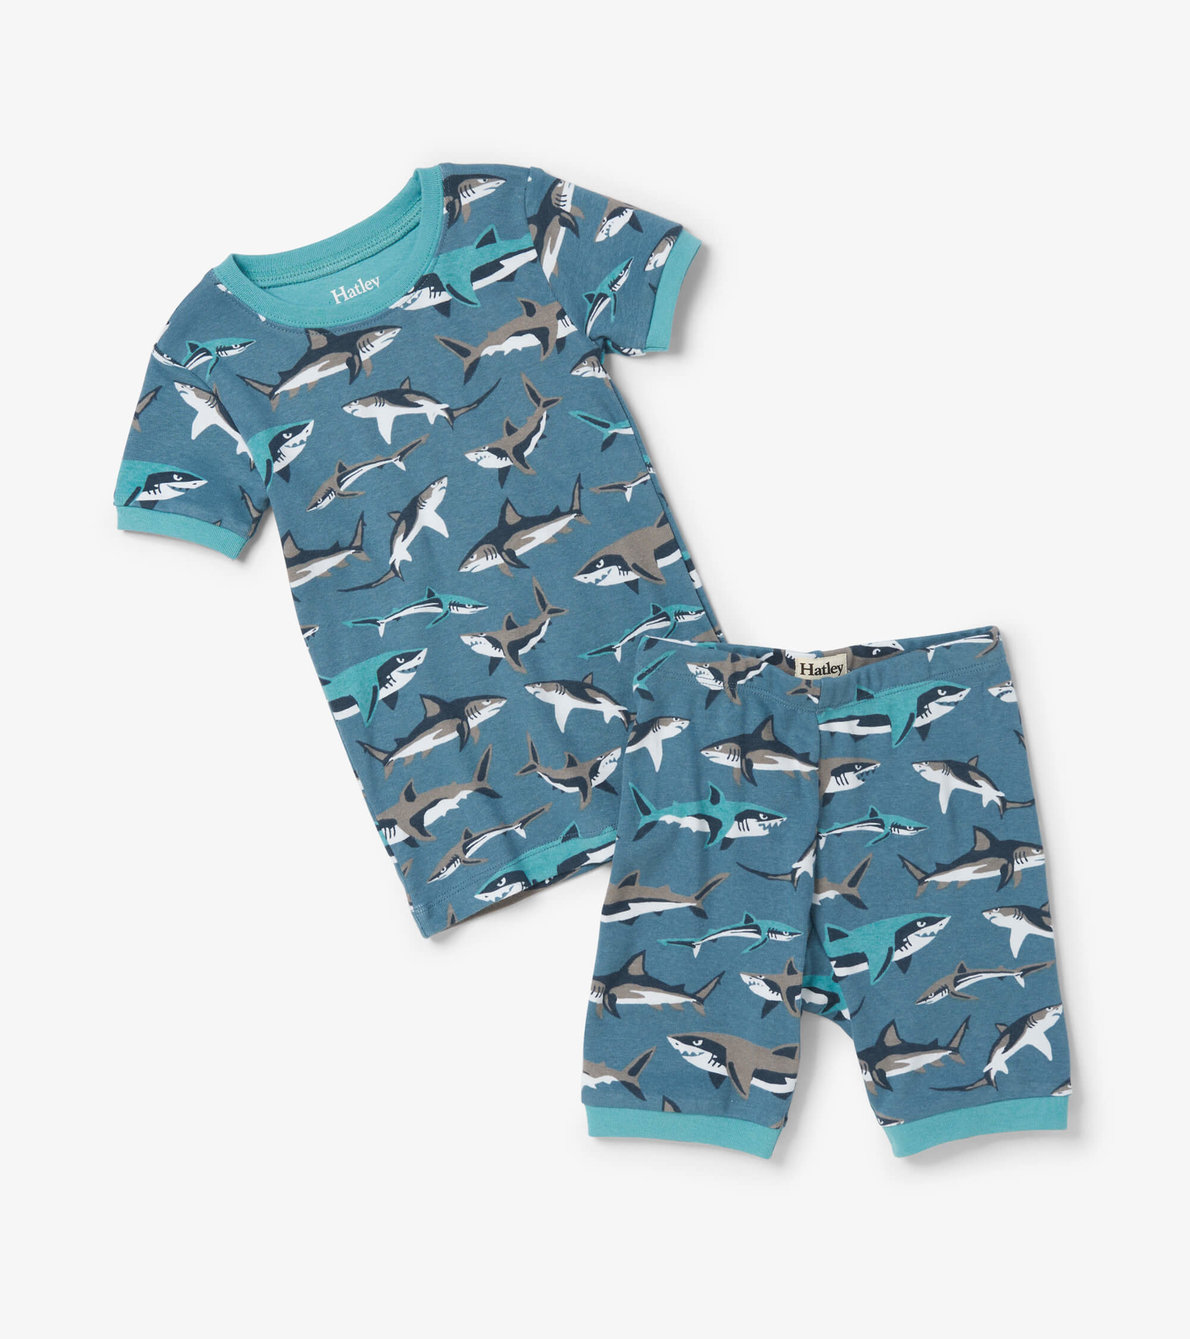 View larger image of Sneak Around Sharks Short Pajama Set